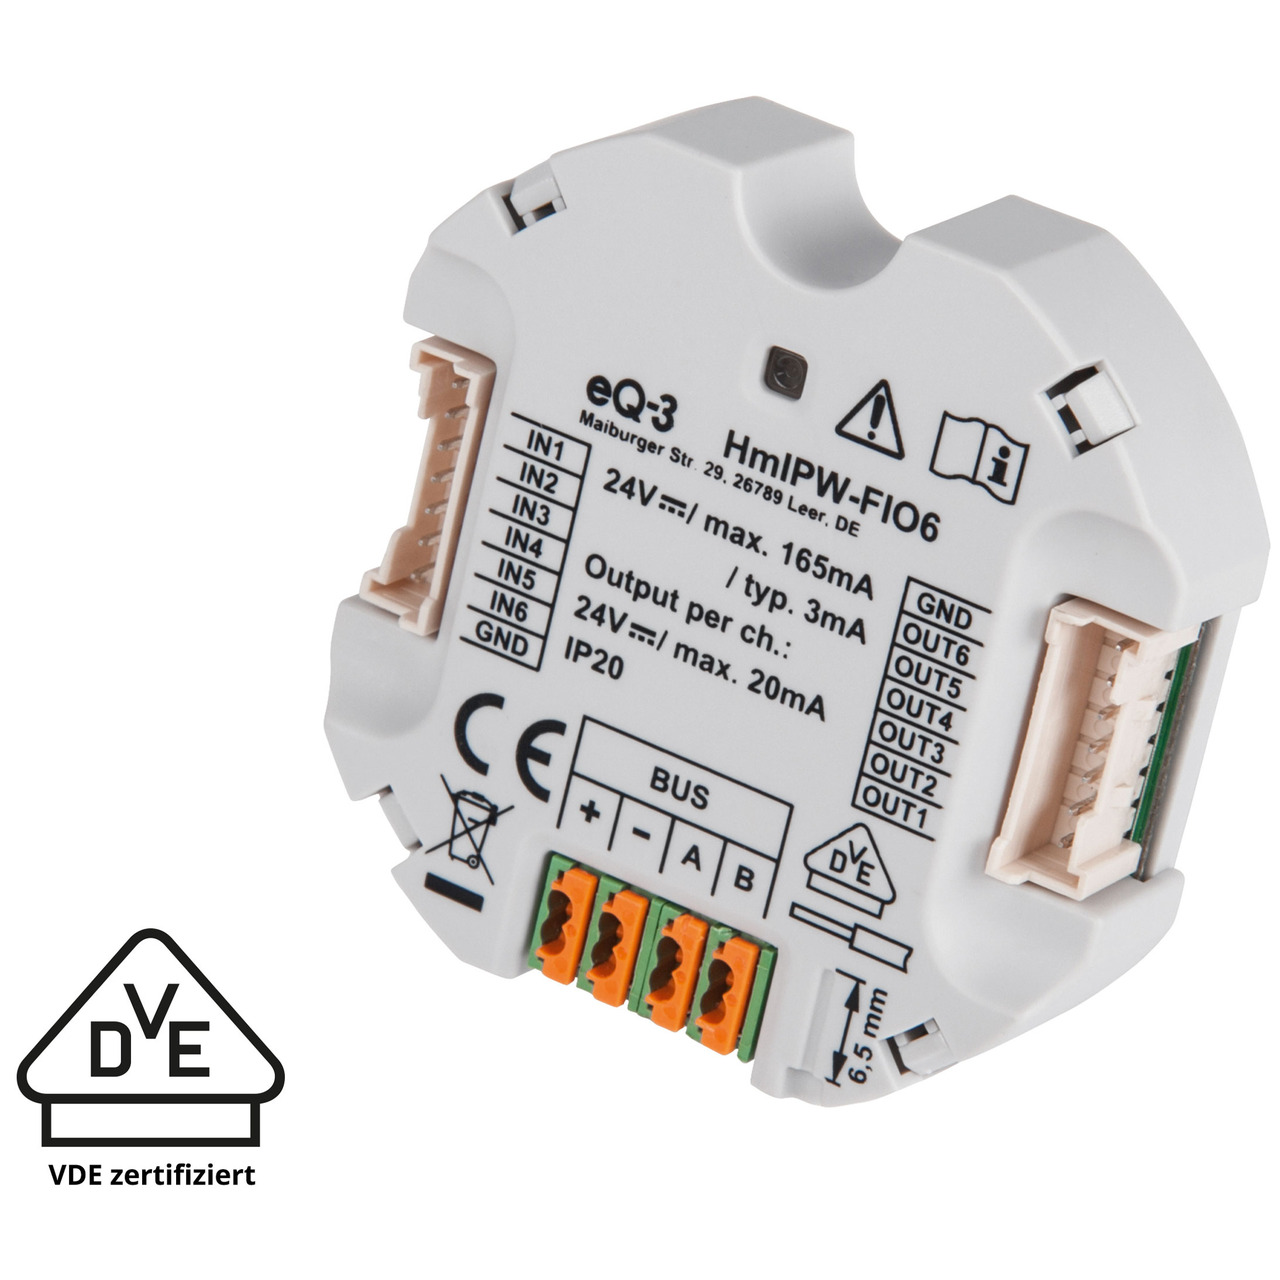 Homematic IP Wired Smart Home 6-fach-Unterputz-IO-Modul HmIPW-FIO6- VDE zertifiziert unter Hausautomation